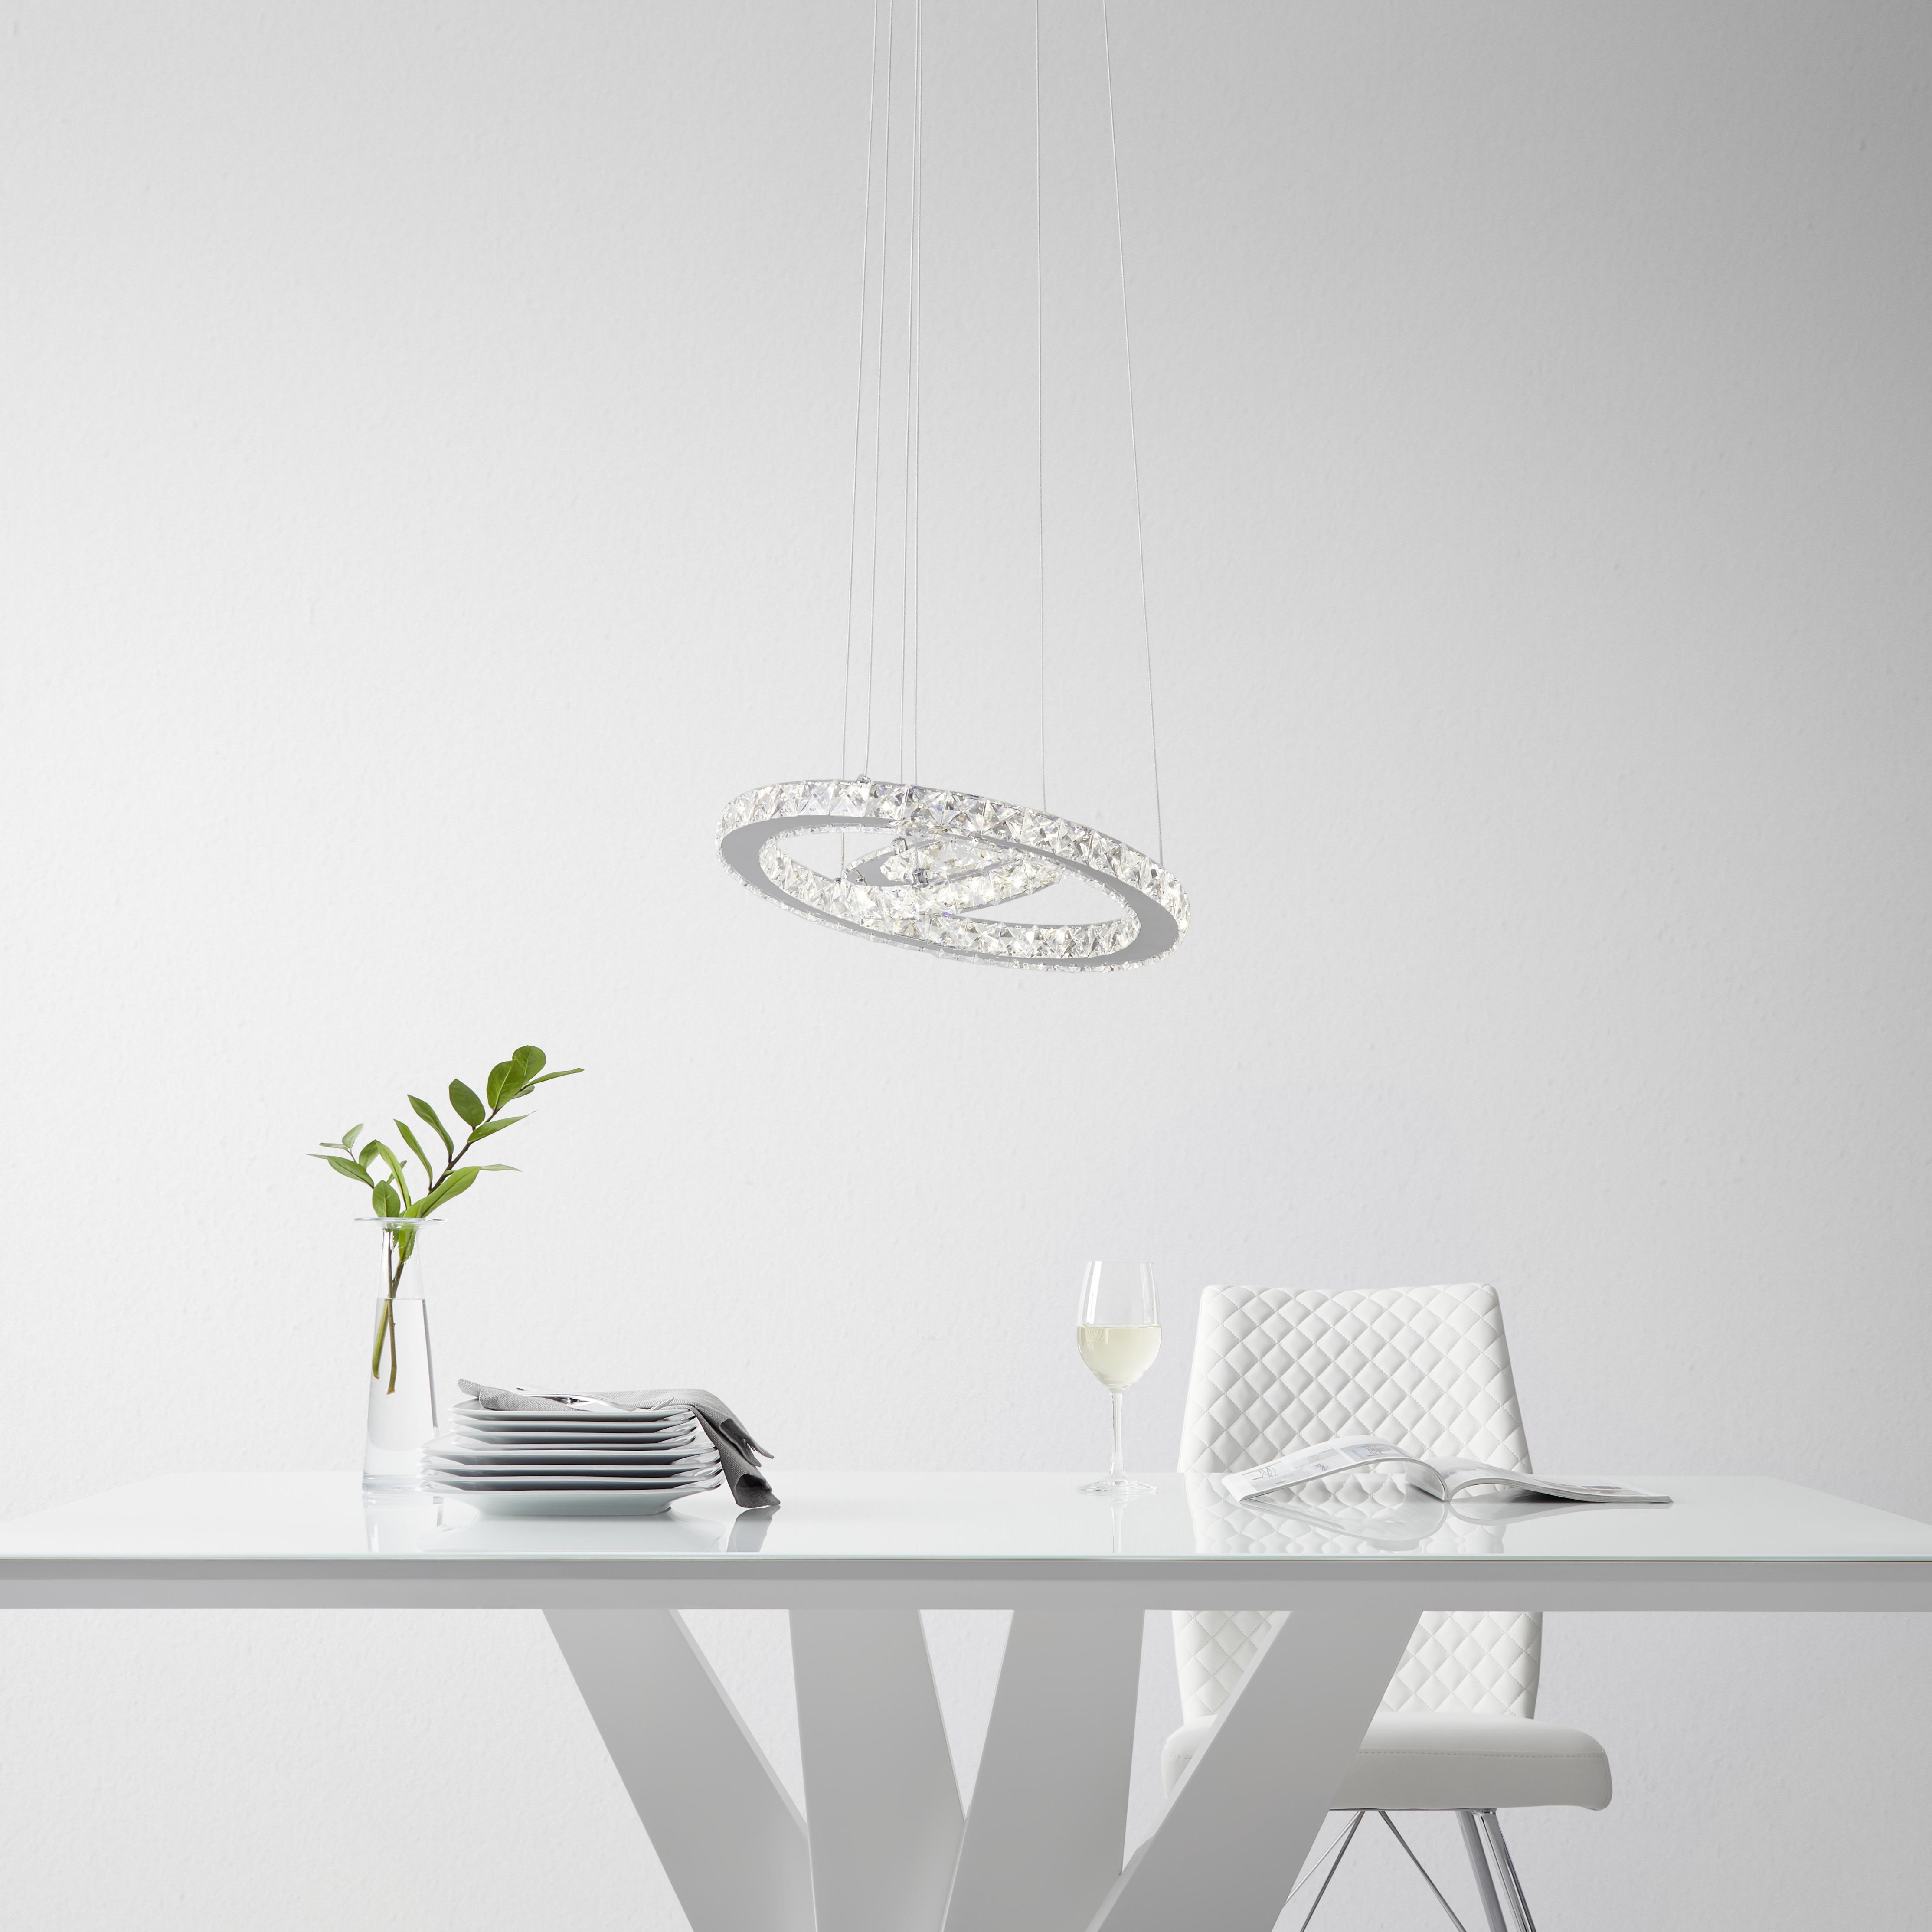 Led Závesná Lampa Forli 100-150cm, 24 Watt - chrómová, Moderný, kov/plast (40/100-150cm) - Premium Living